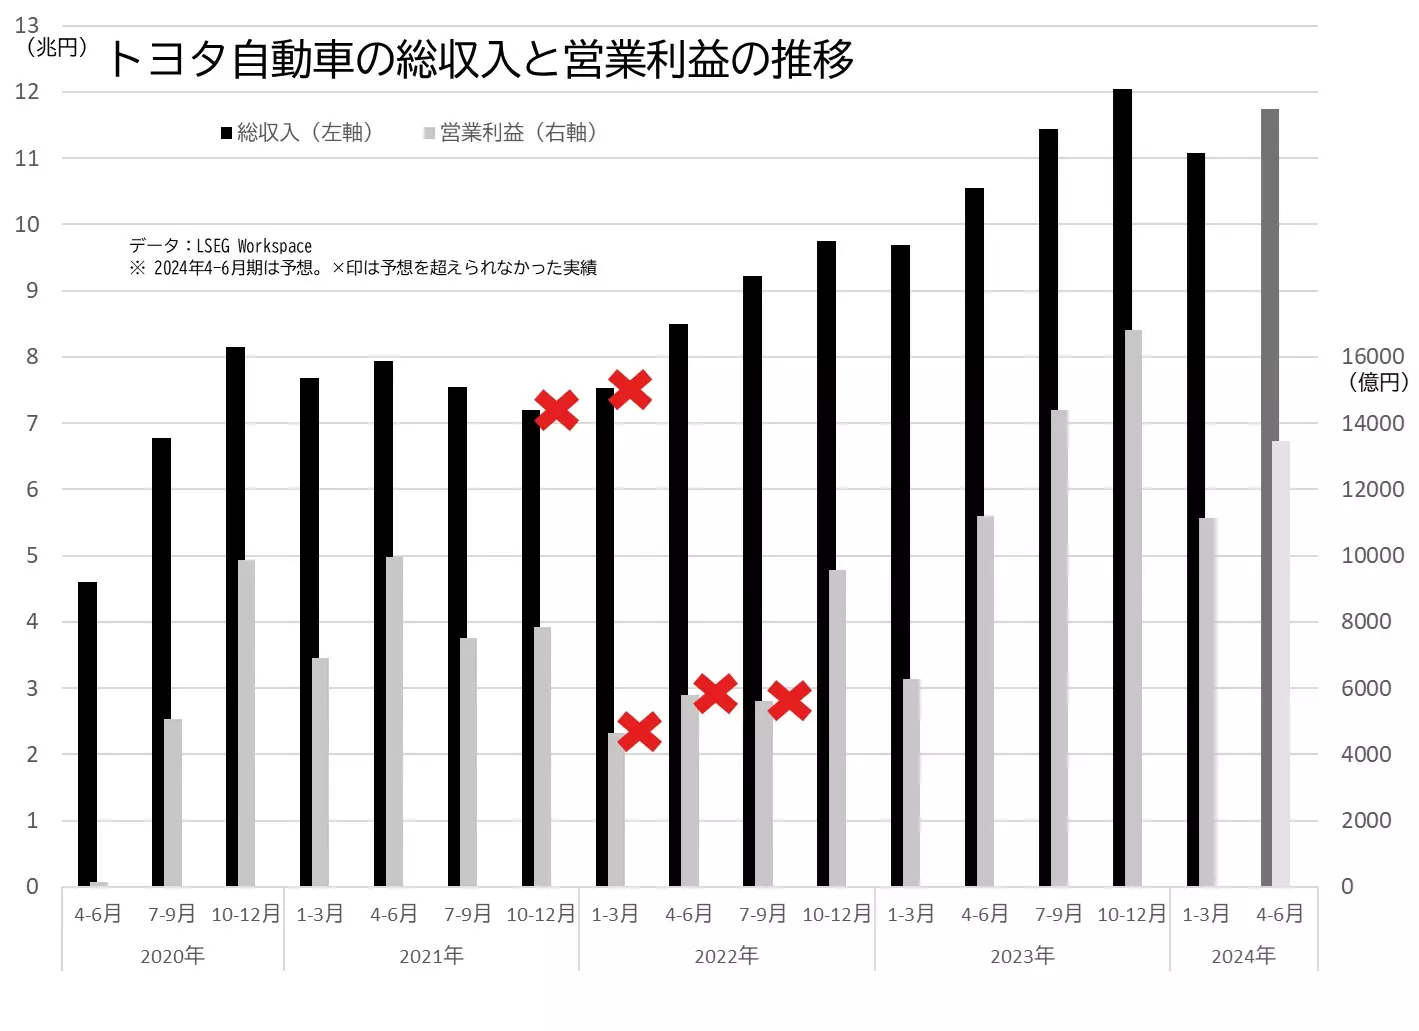 トヨタ自動車の業績（総収入、営業利益）の推移のグラフ